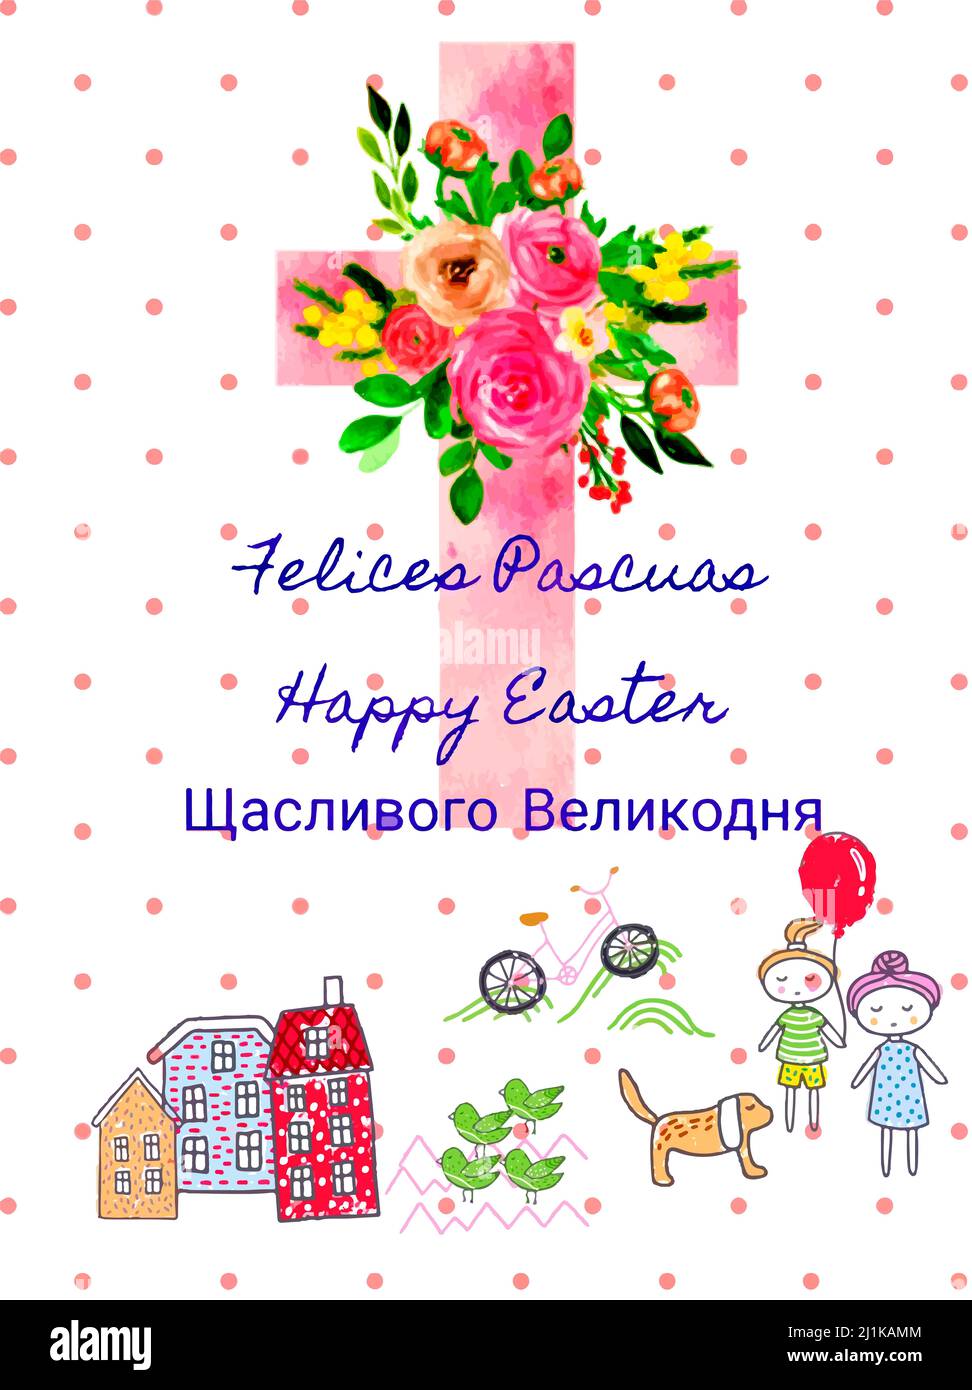 Happy Easter Felices Pascuas Щасливого Великодня Stock Photo